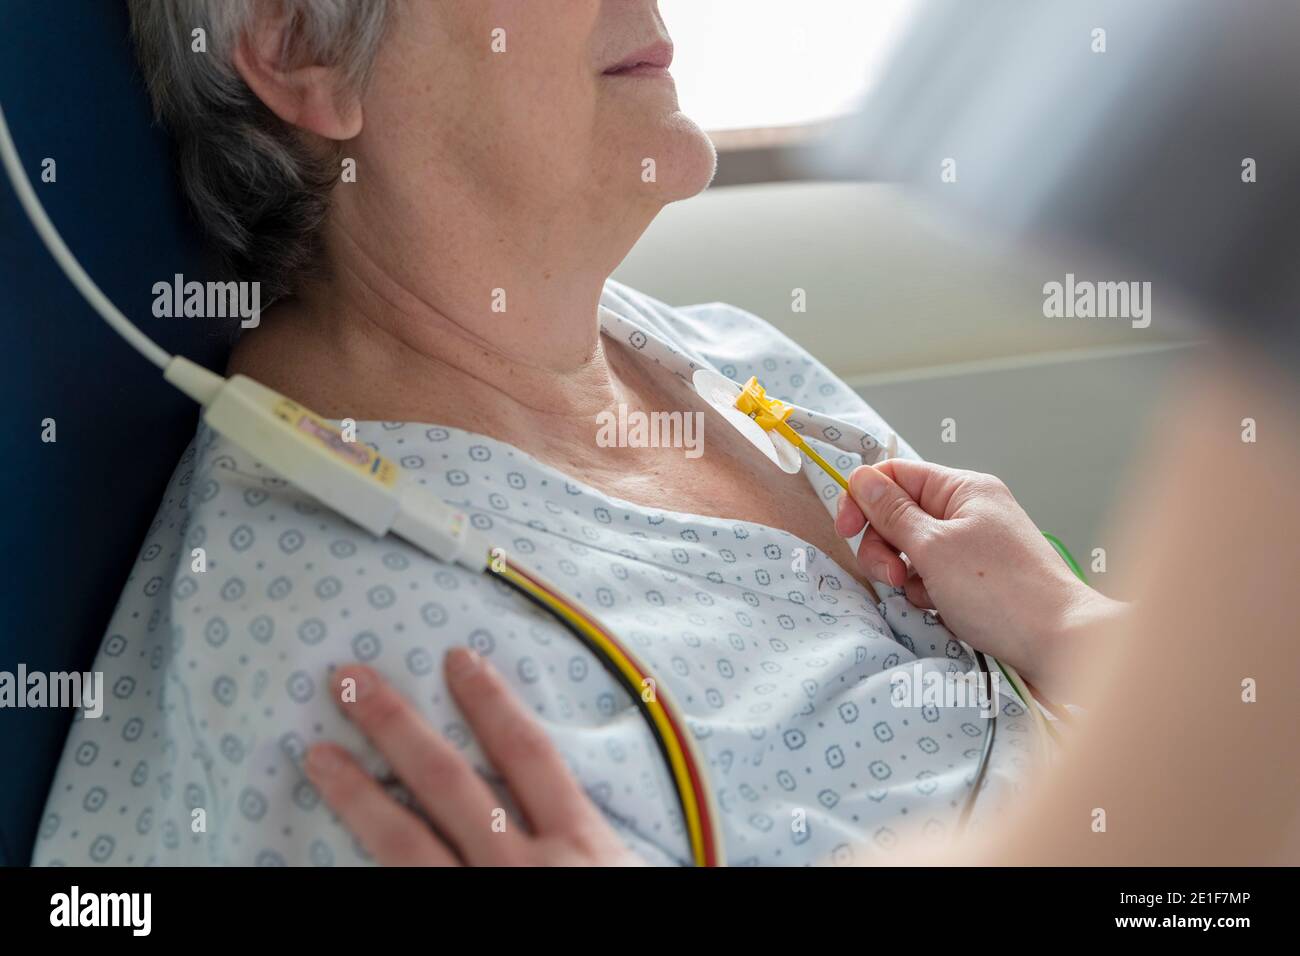 a nurse places electrodes on a patient's chest Stock Photo